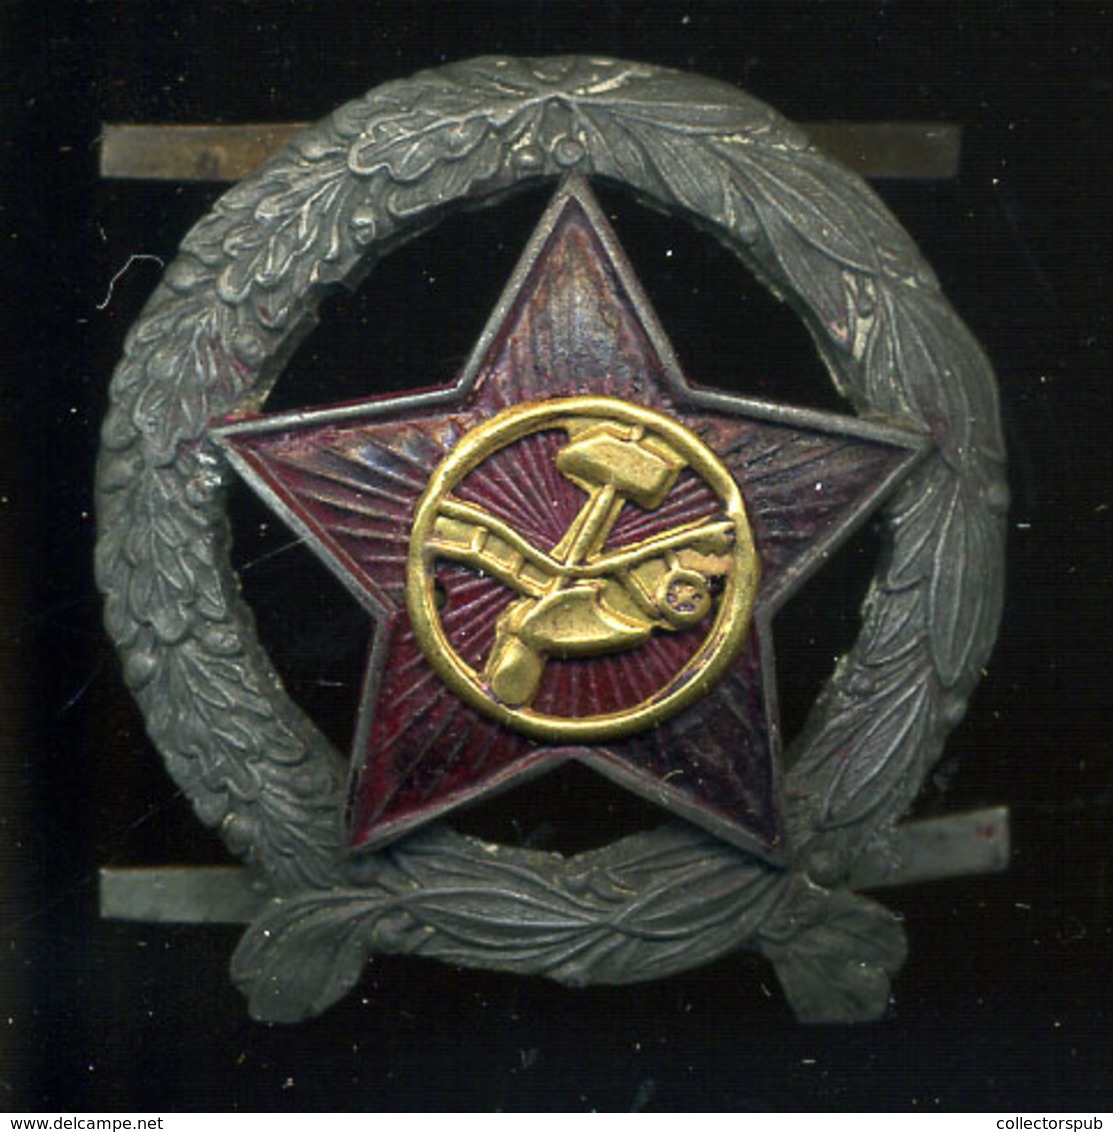 TANÁCSKÖZTÁRSASÁG SAPKAJELVÉNY HUNGARY SOVIET REPUBLIC 1919 - Army